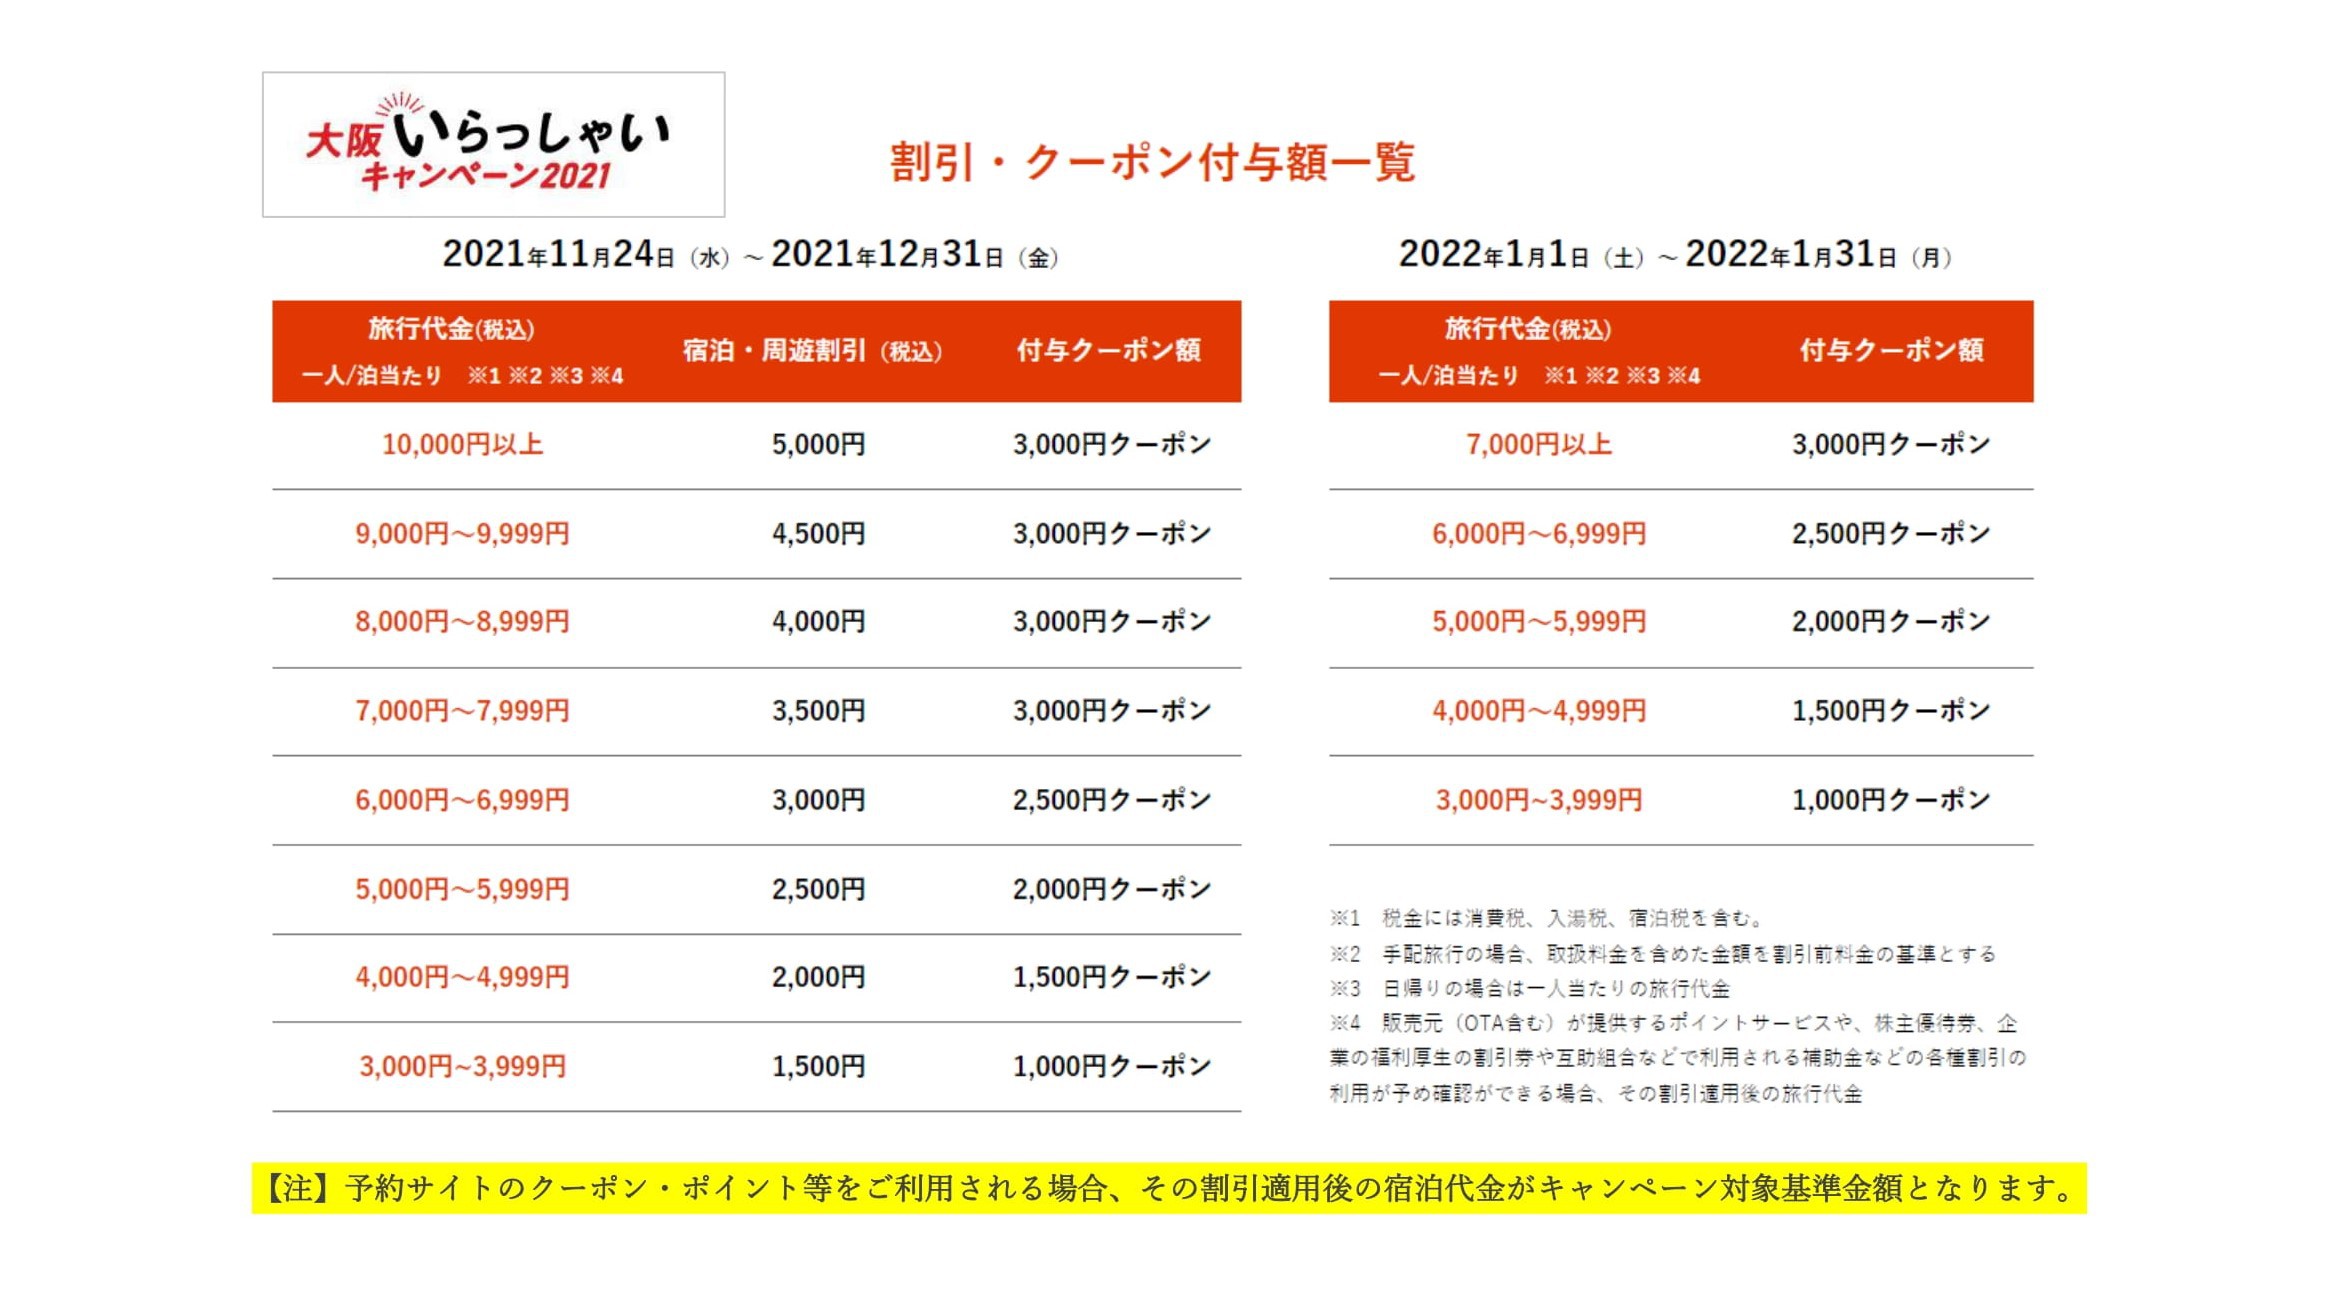 【大阪いらっしゃい2021】宿泊割引・クーポン付与額一覧